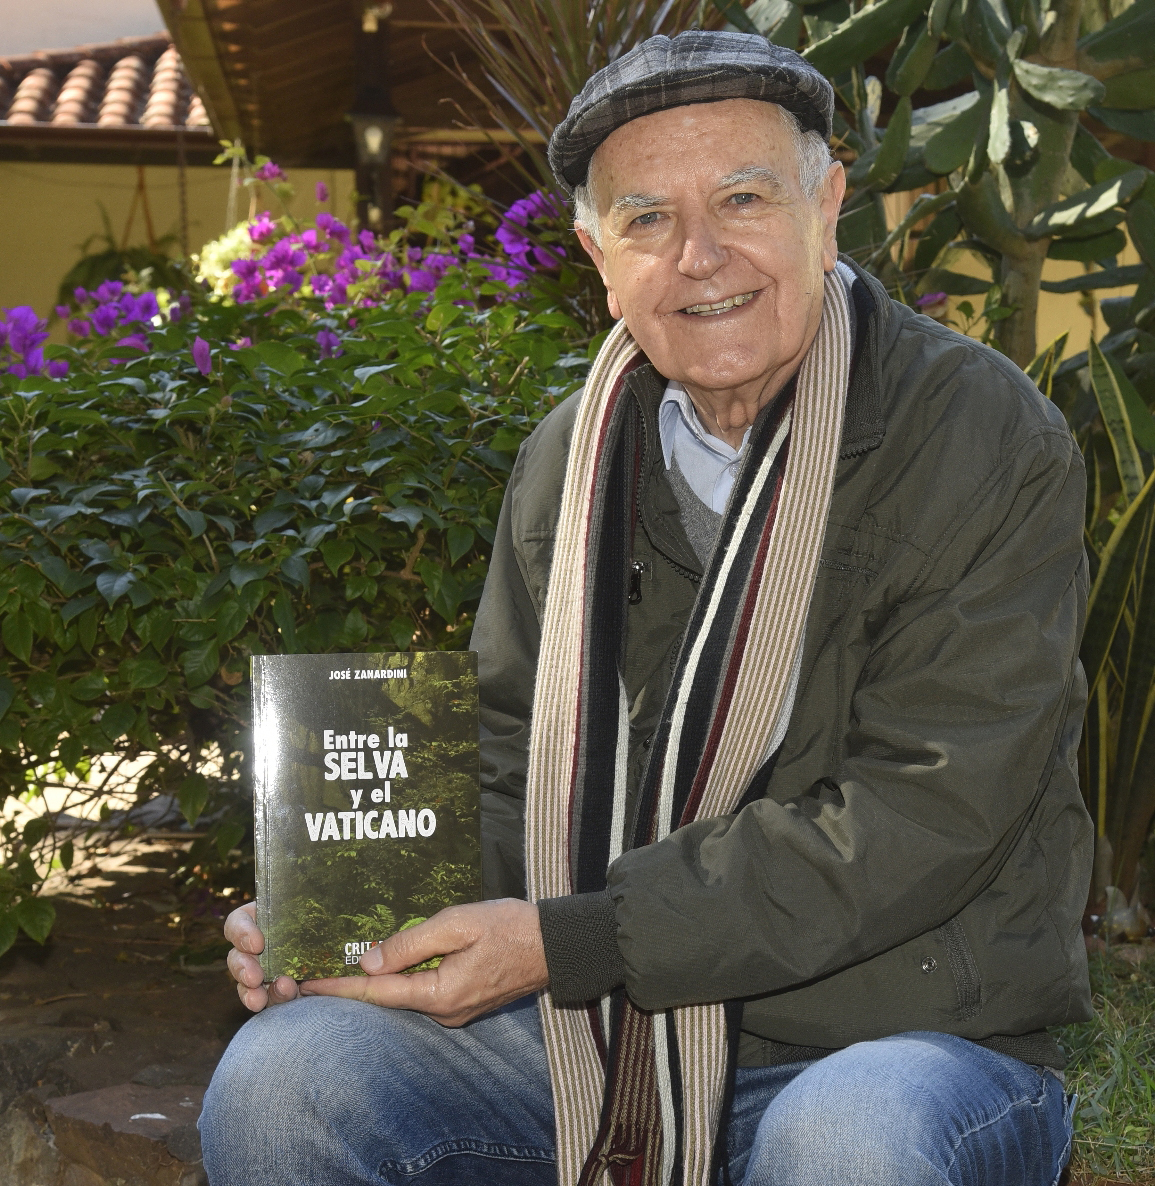 El padre José Zanardini exhibe su última obra, la novela “Entre la selva y el Vaticano”